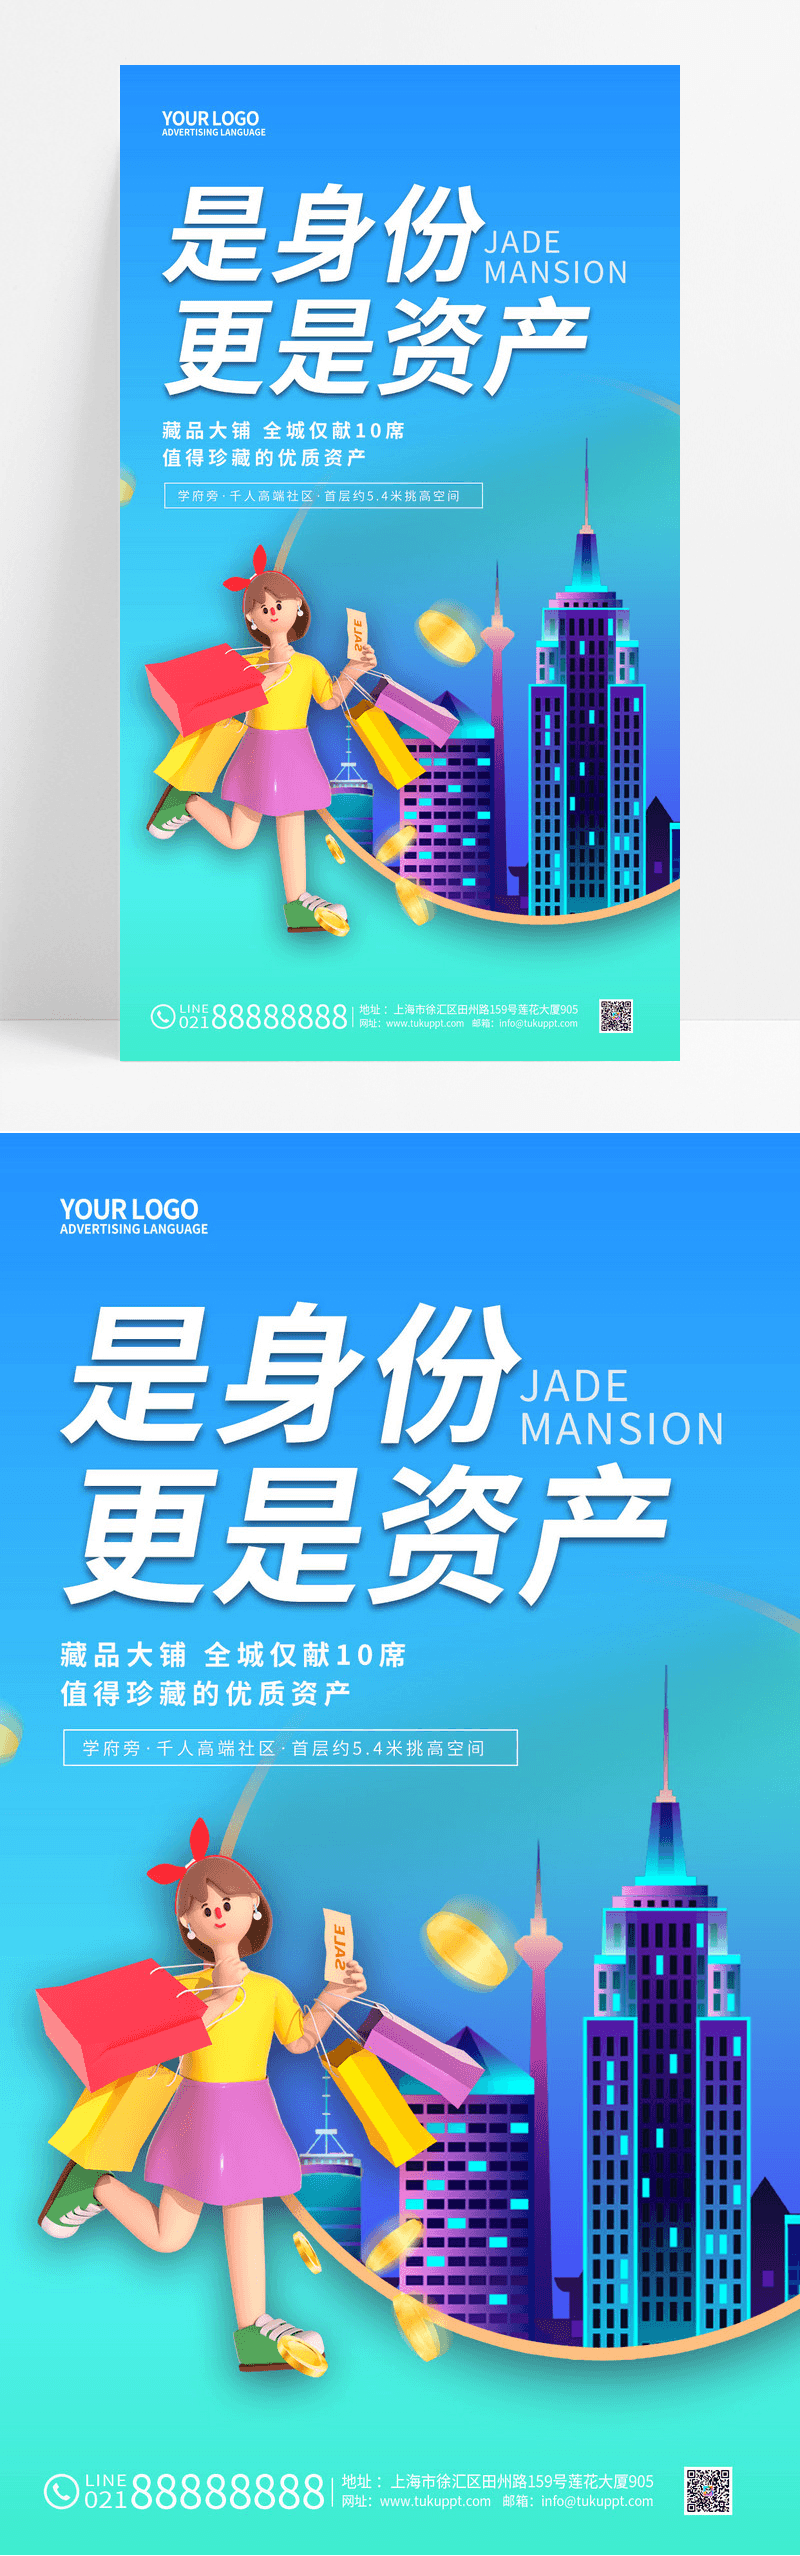 蓝色3d招商手机宣传海报招商招租